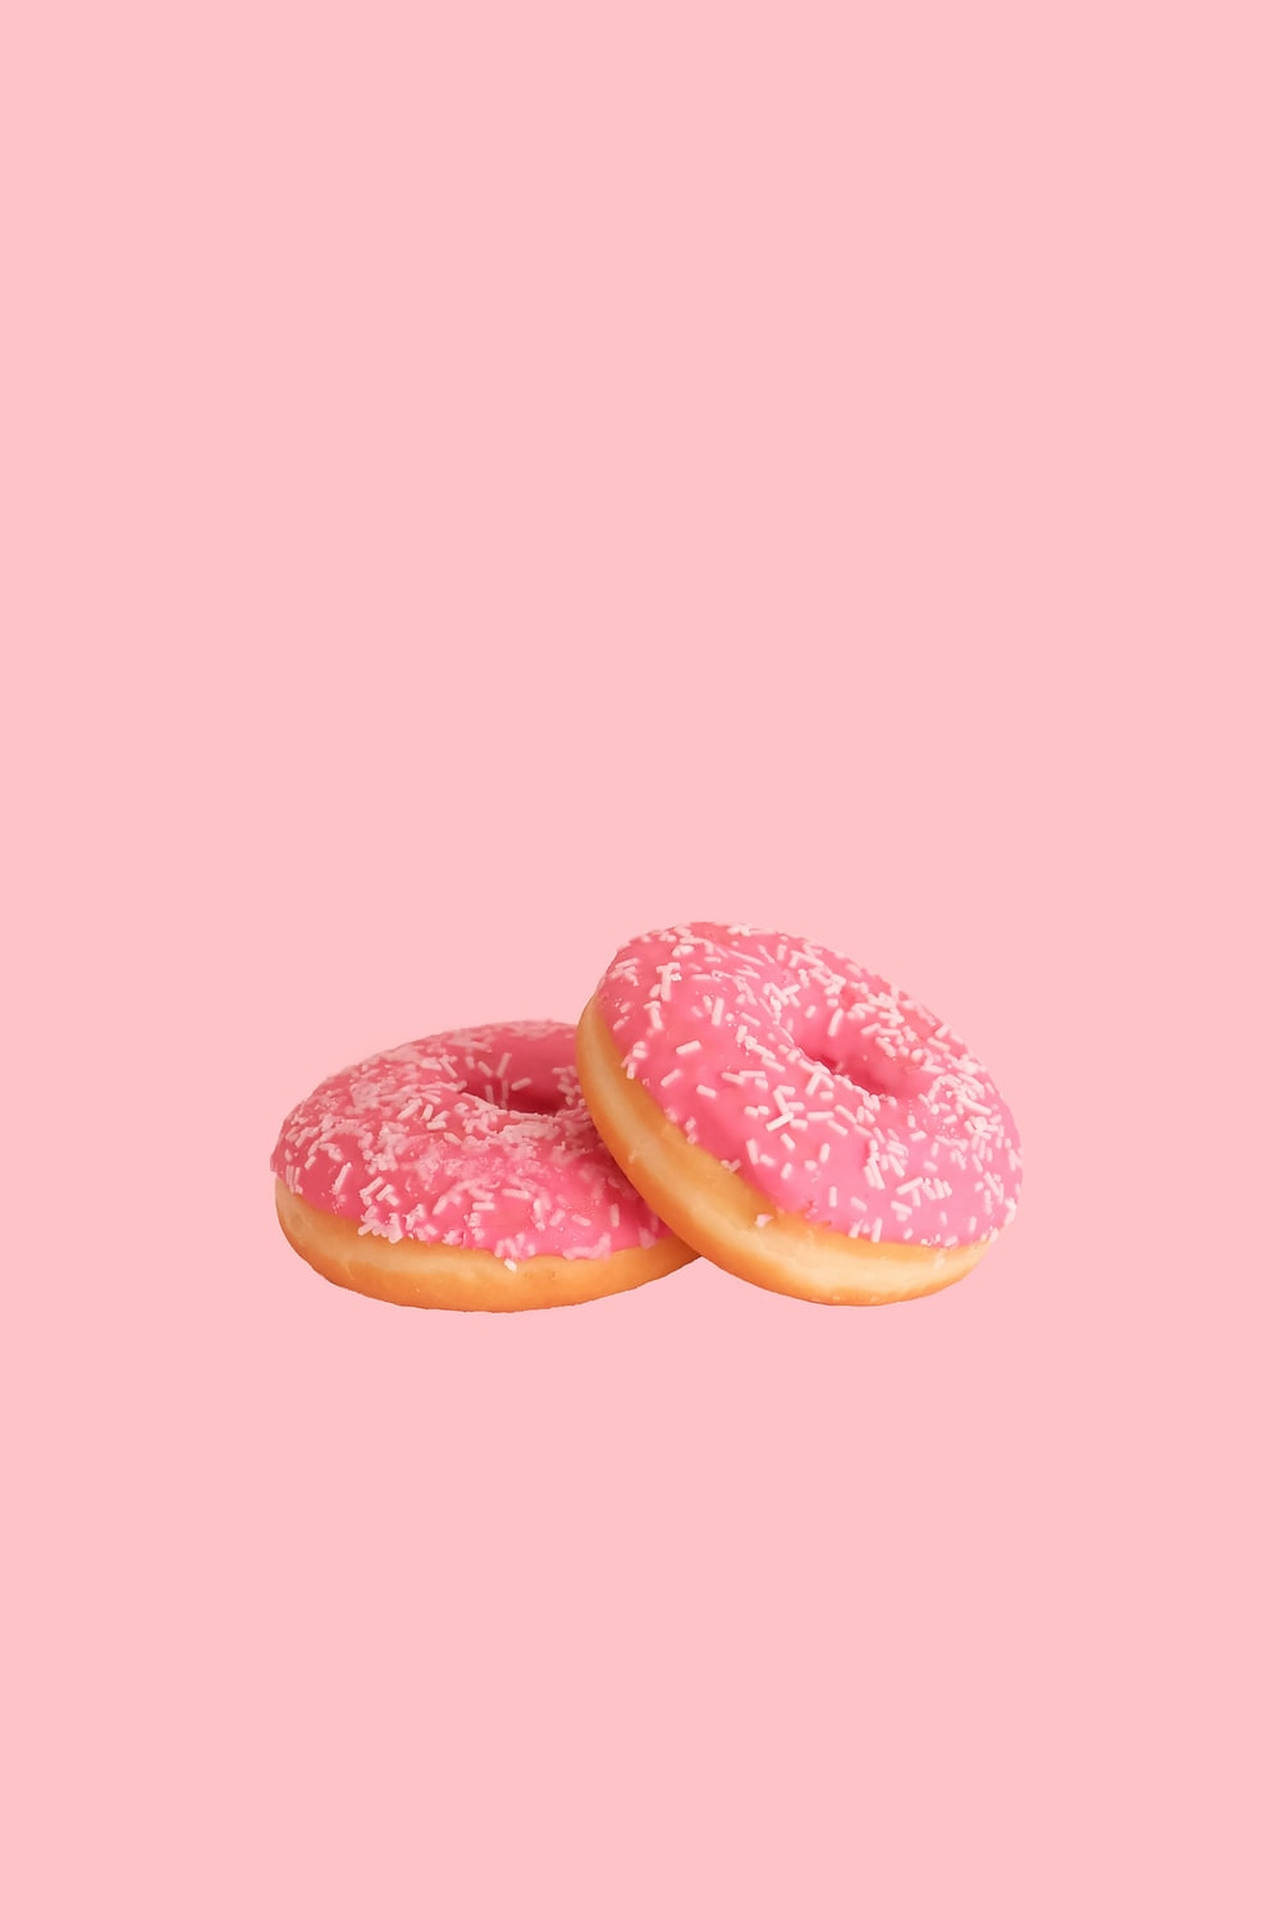 Pink Doughnut Bakery Wallpaper